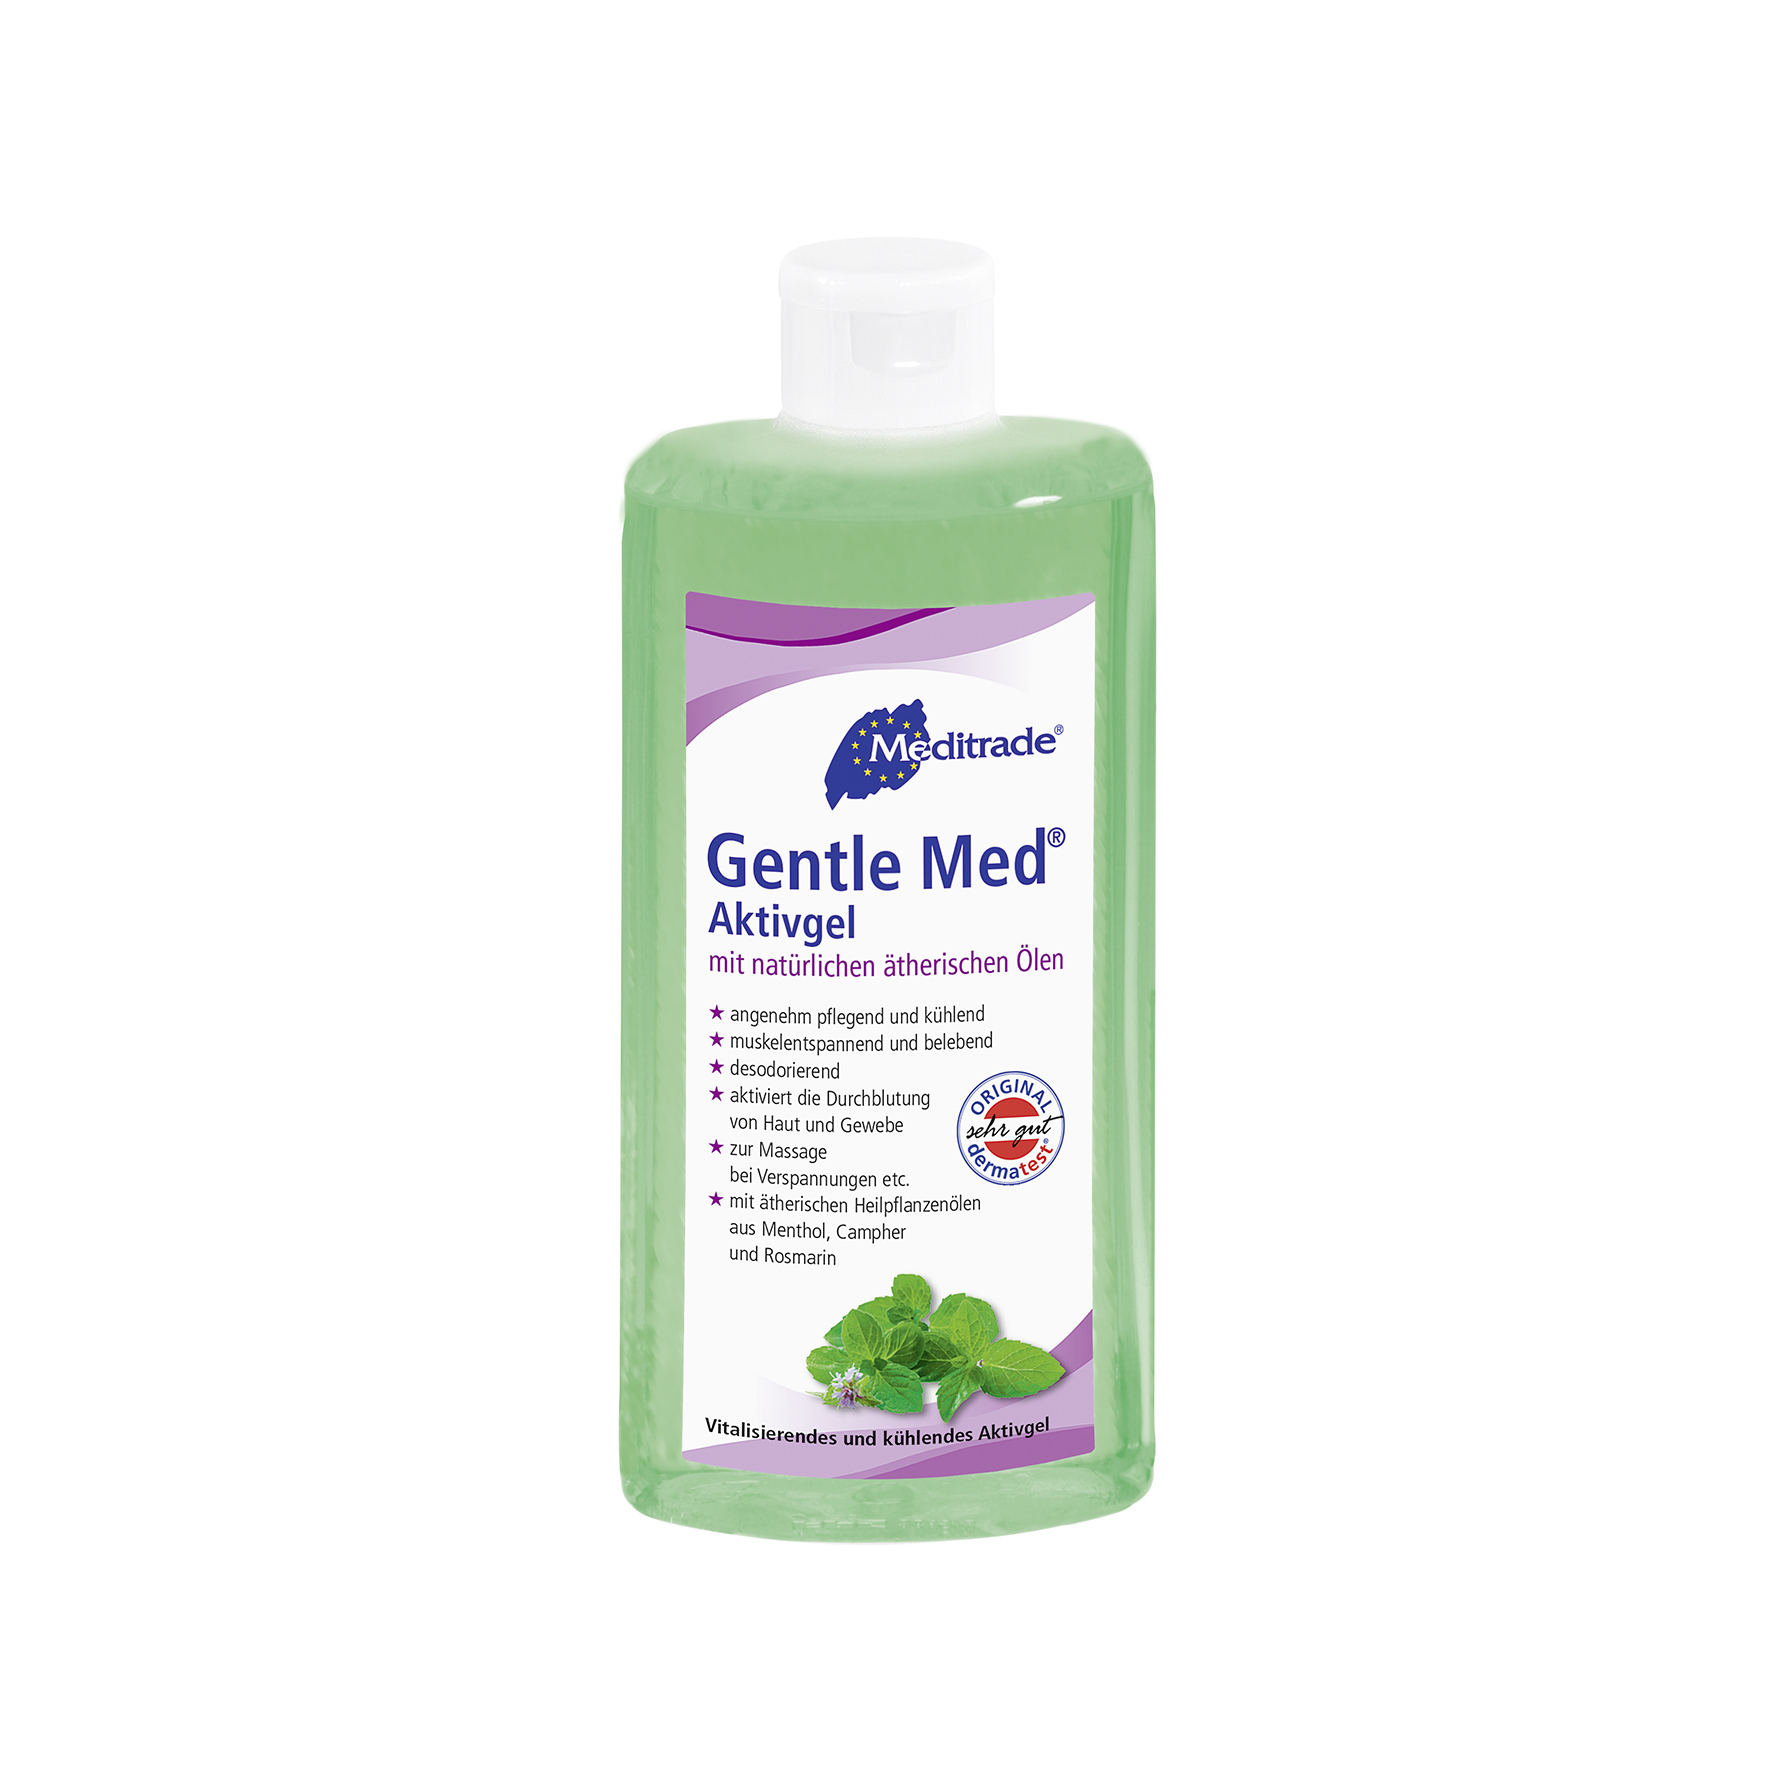 Gentle Med® Aktivgel - 500 ml